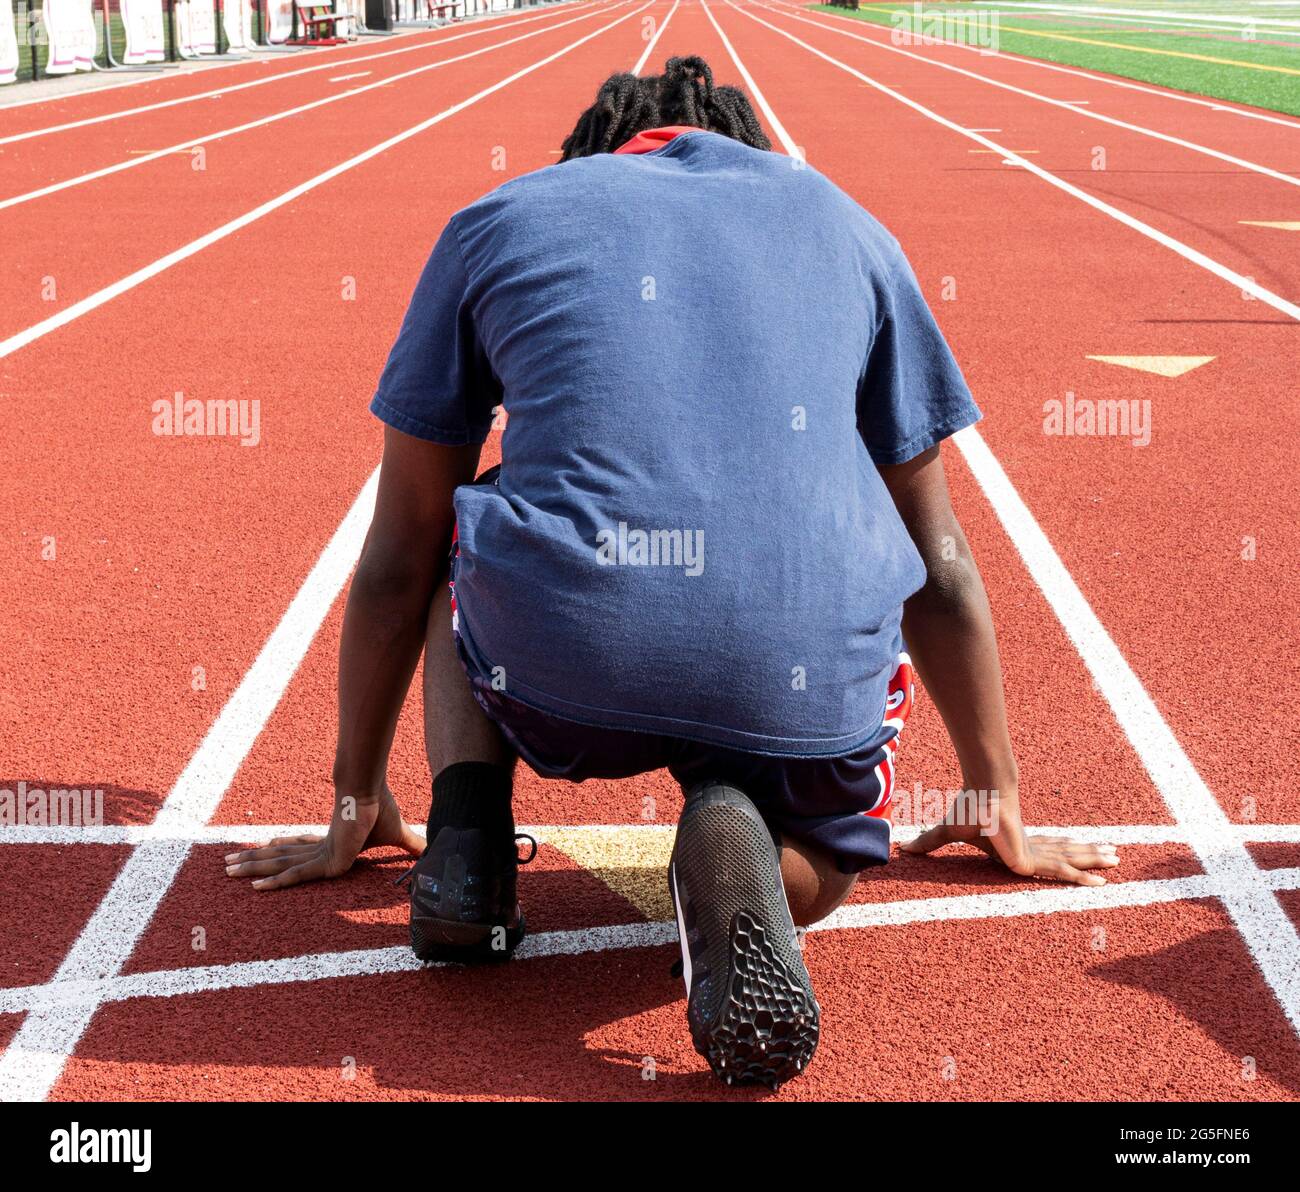 Rückansicht eines Highschool-Laufes und Sprintläufers, der bereit ist, während des Trainings auf der Spur die Strecke zu laufen. Stockfoto